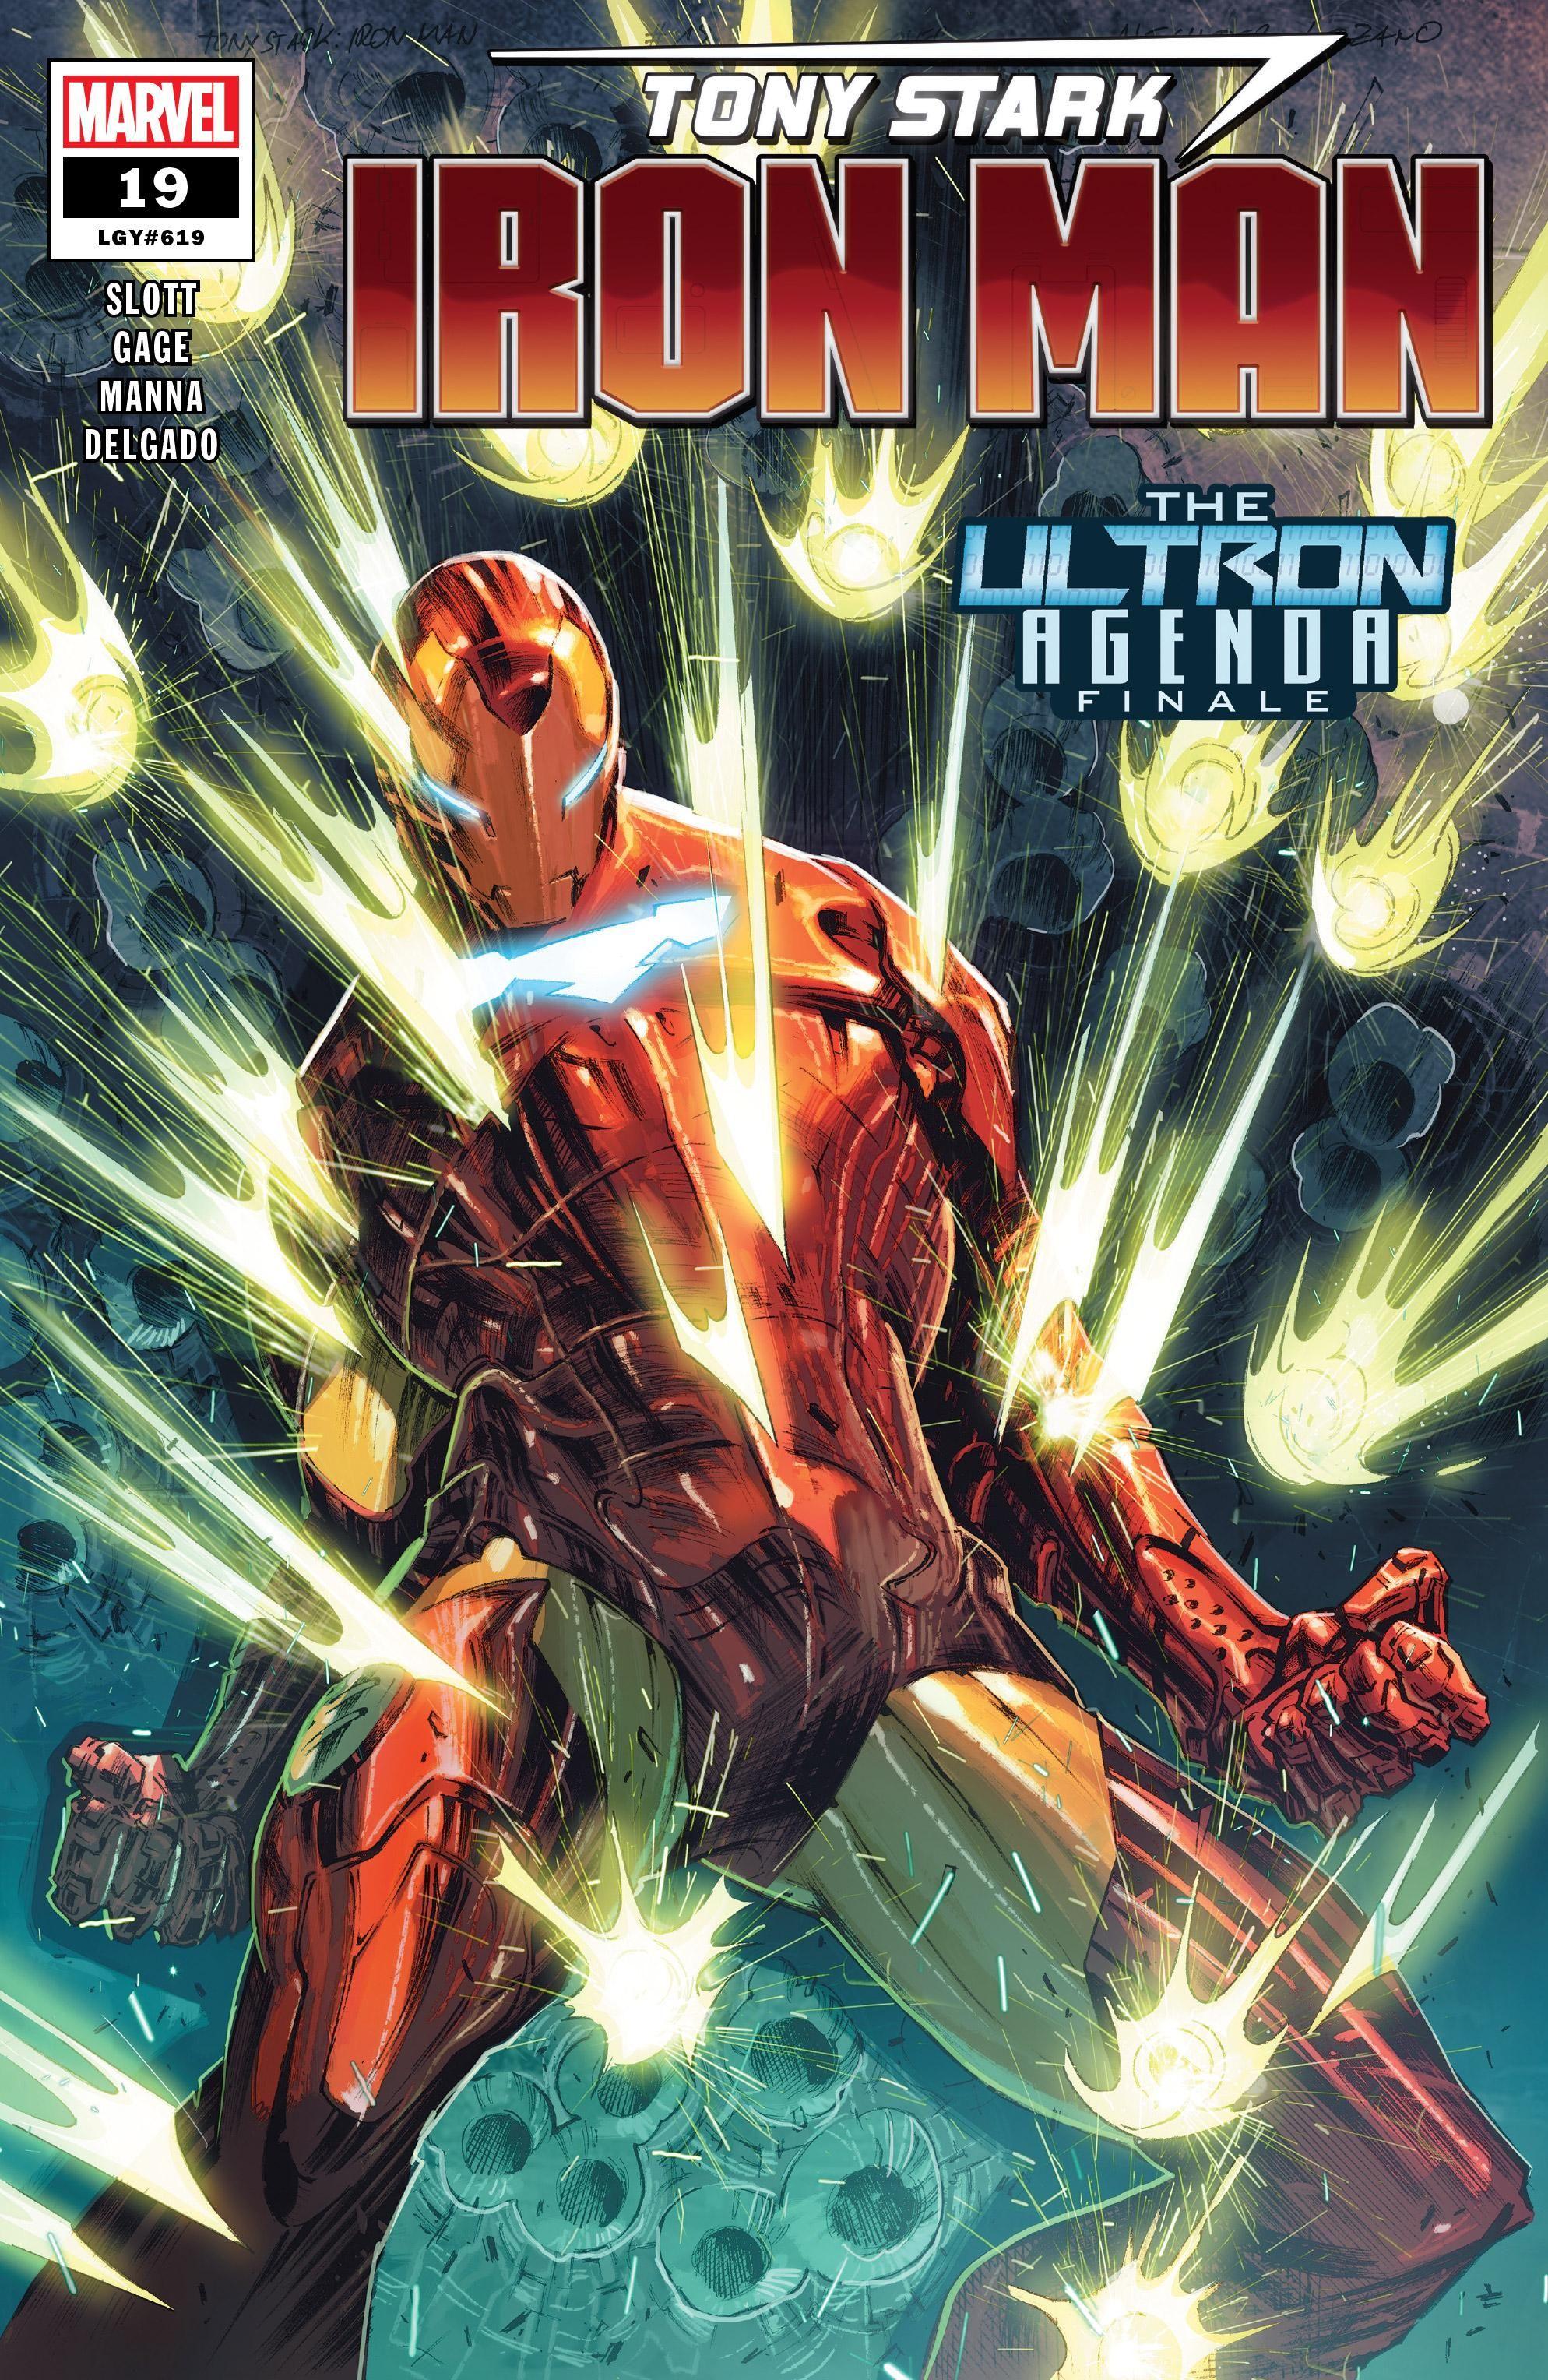 Tony Stark: Iron Man Vol. 1 #19